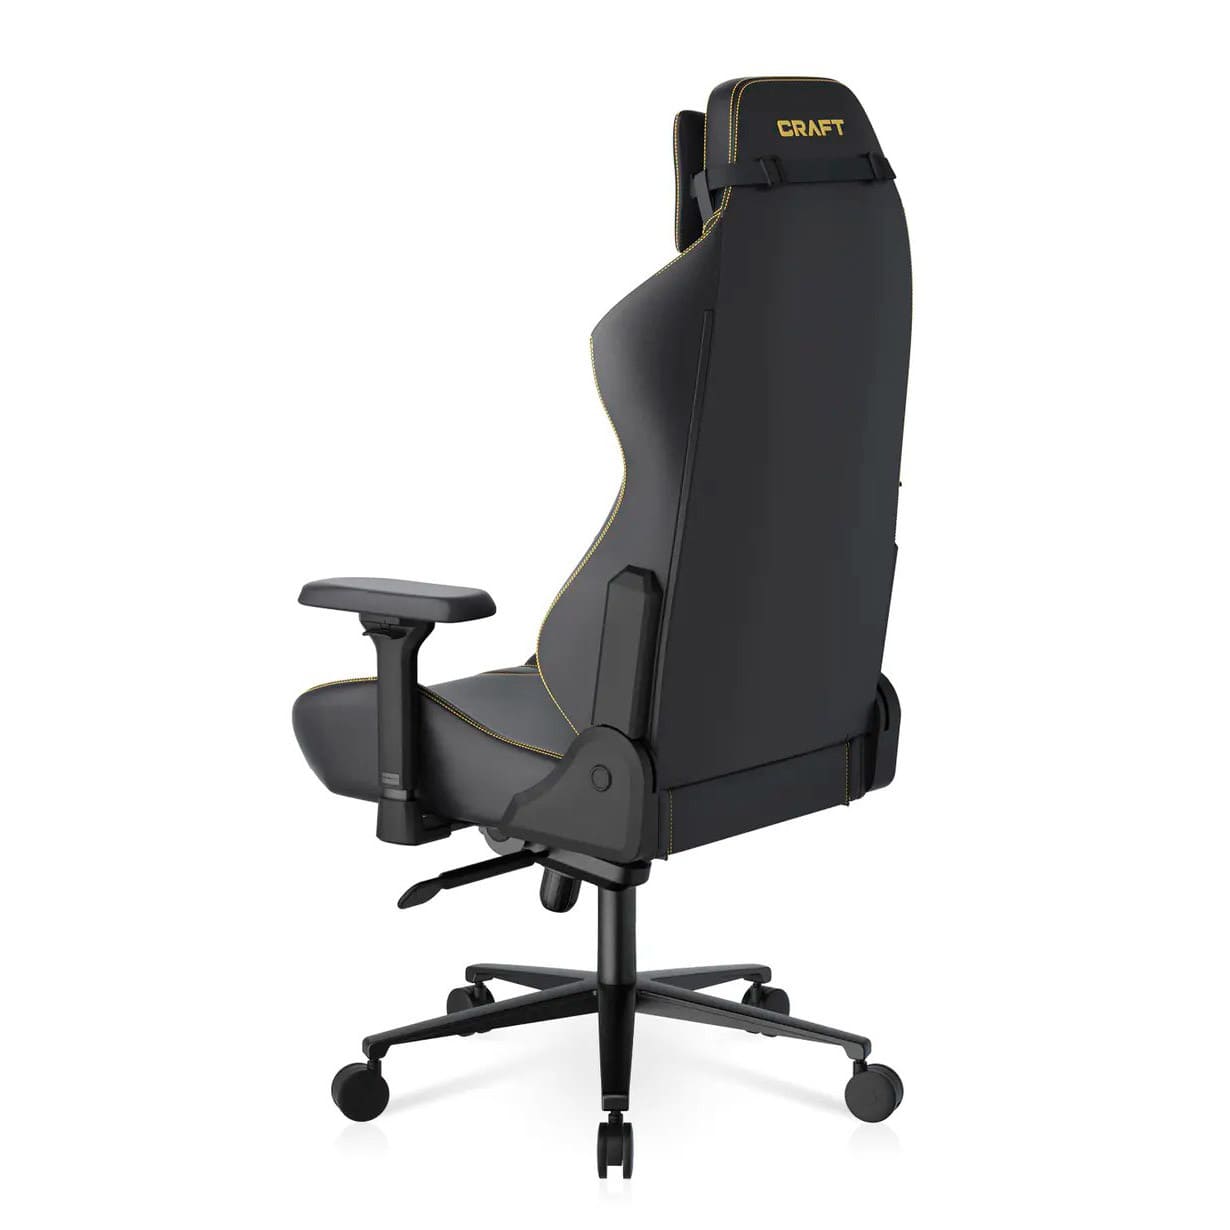 Геймерское кресло DXRacer CRA/D5000/N